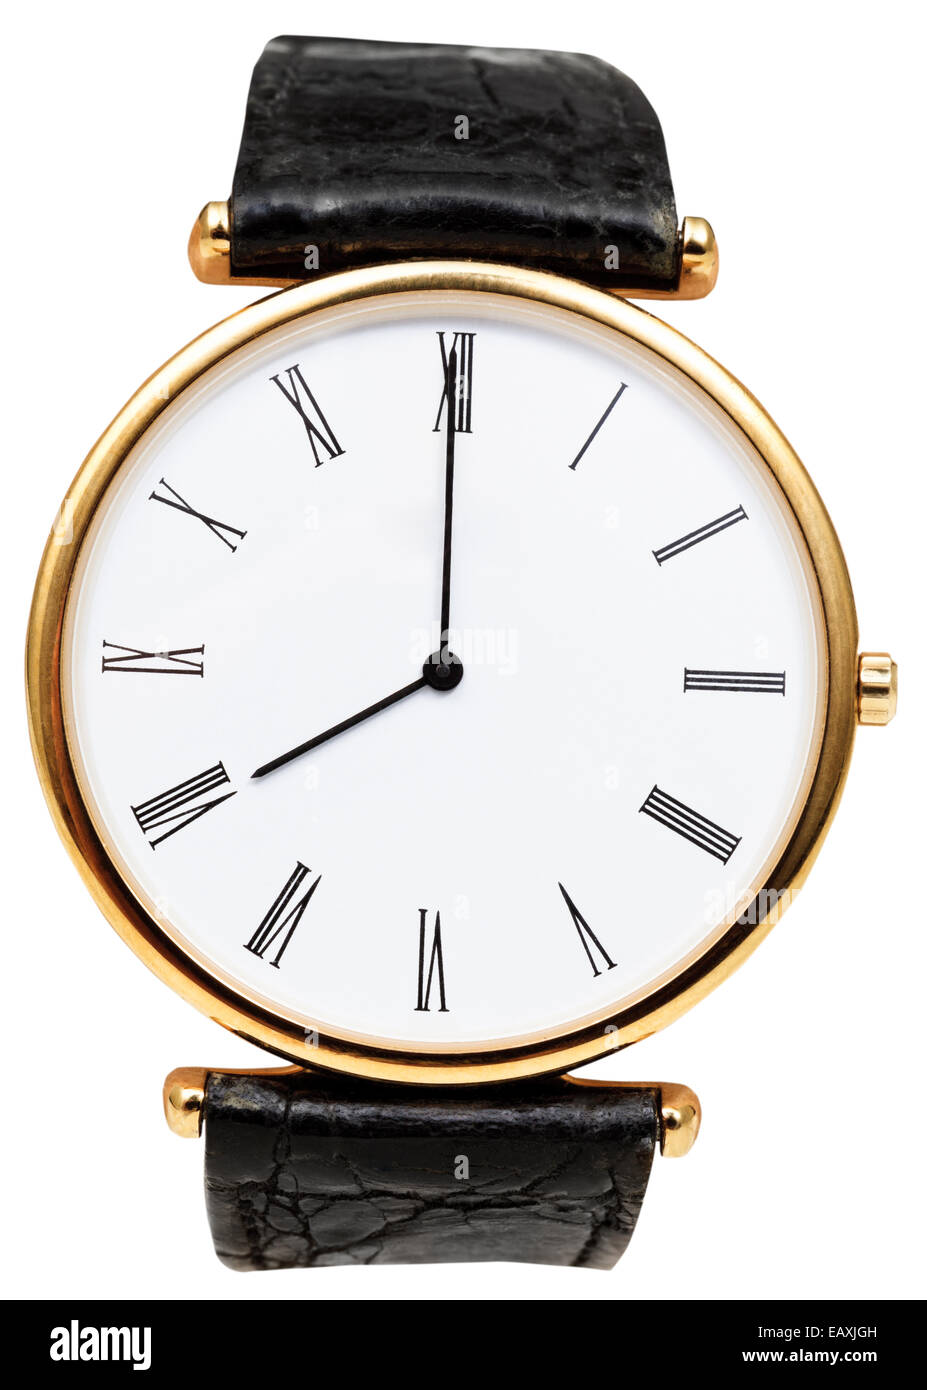 08:00 auf Zifferblatt Armbanduhr isoliert auf weißem Hintergrund Stockfoto